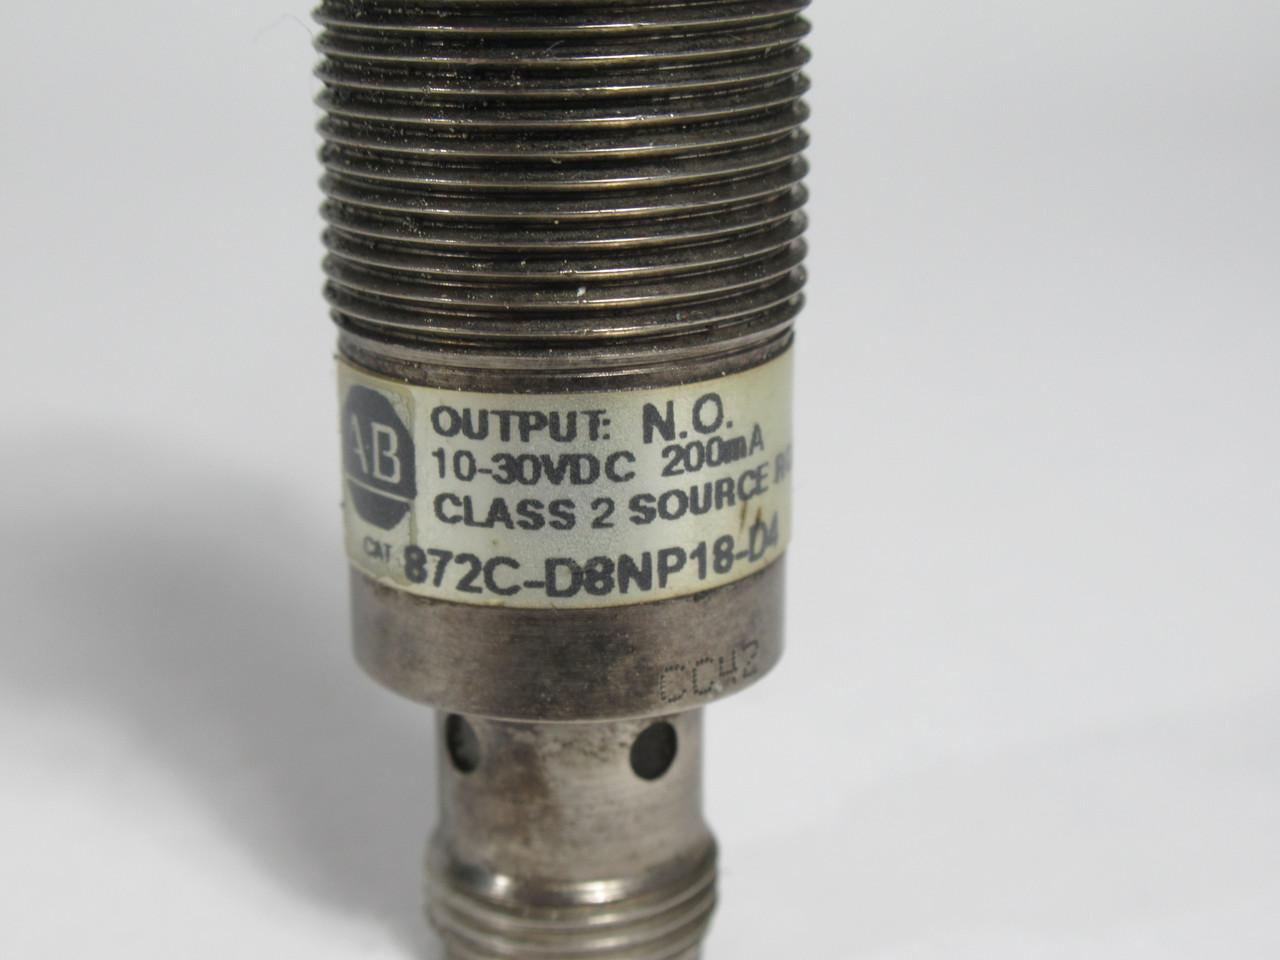 Allen-Bradley 872C-D8NP18-D4 Proximity Sensor 10-30VDC 200mA 8mm USED